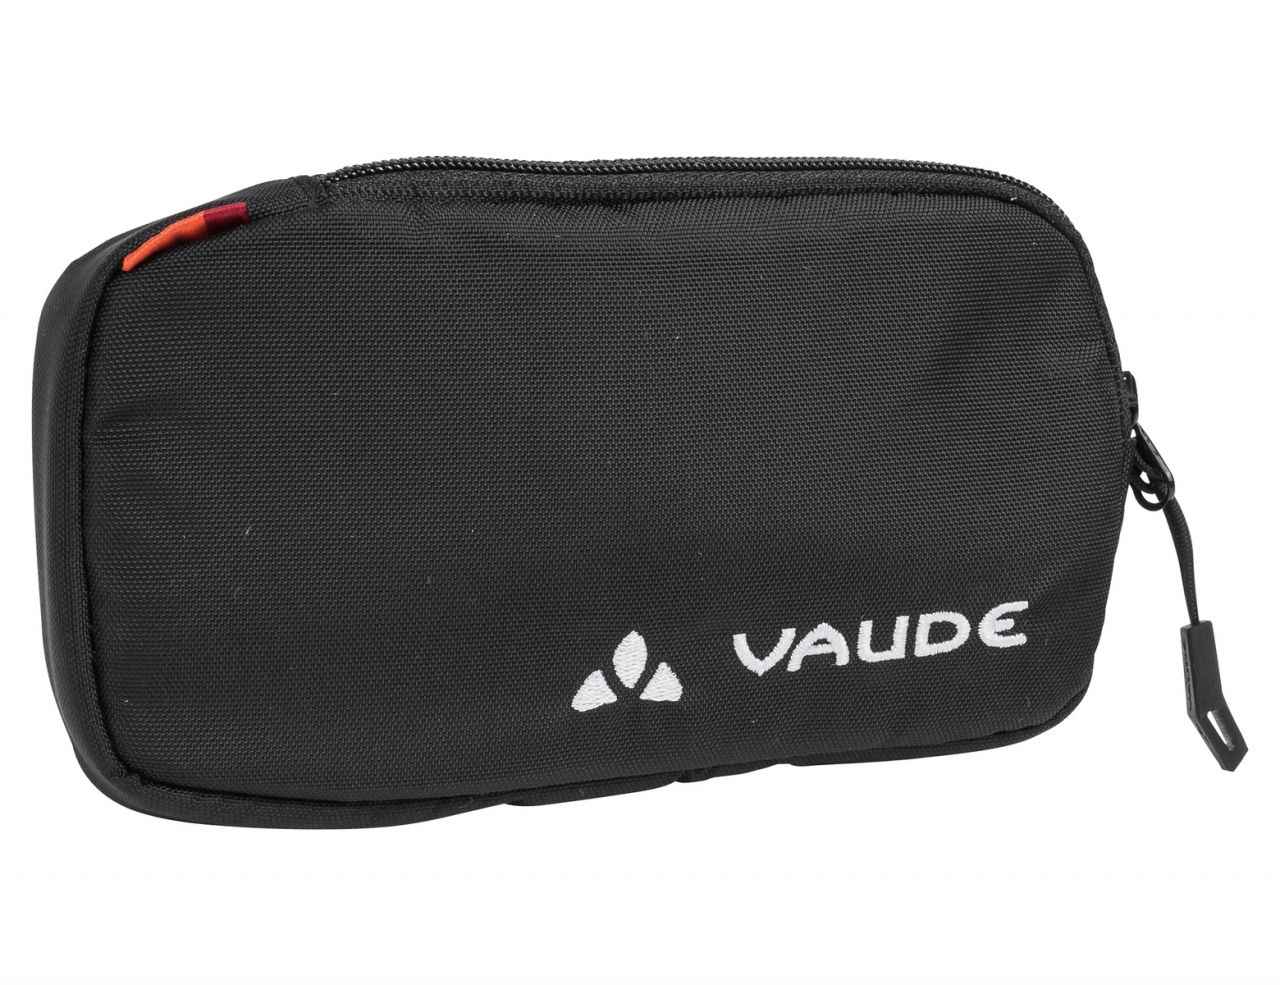 EPOC M Smartphonetasche mit Reissverschluss, Schwarz - Hauptansicht